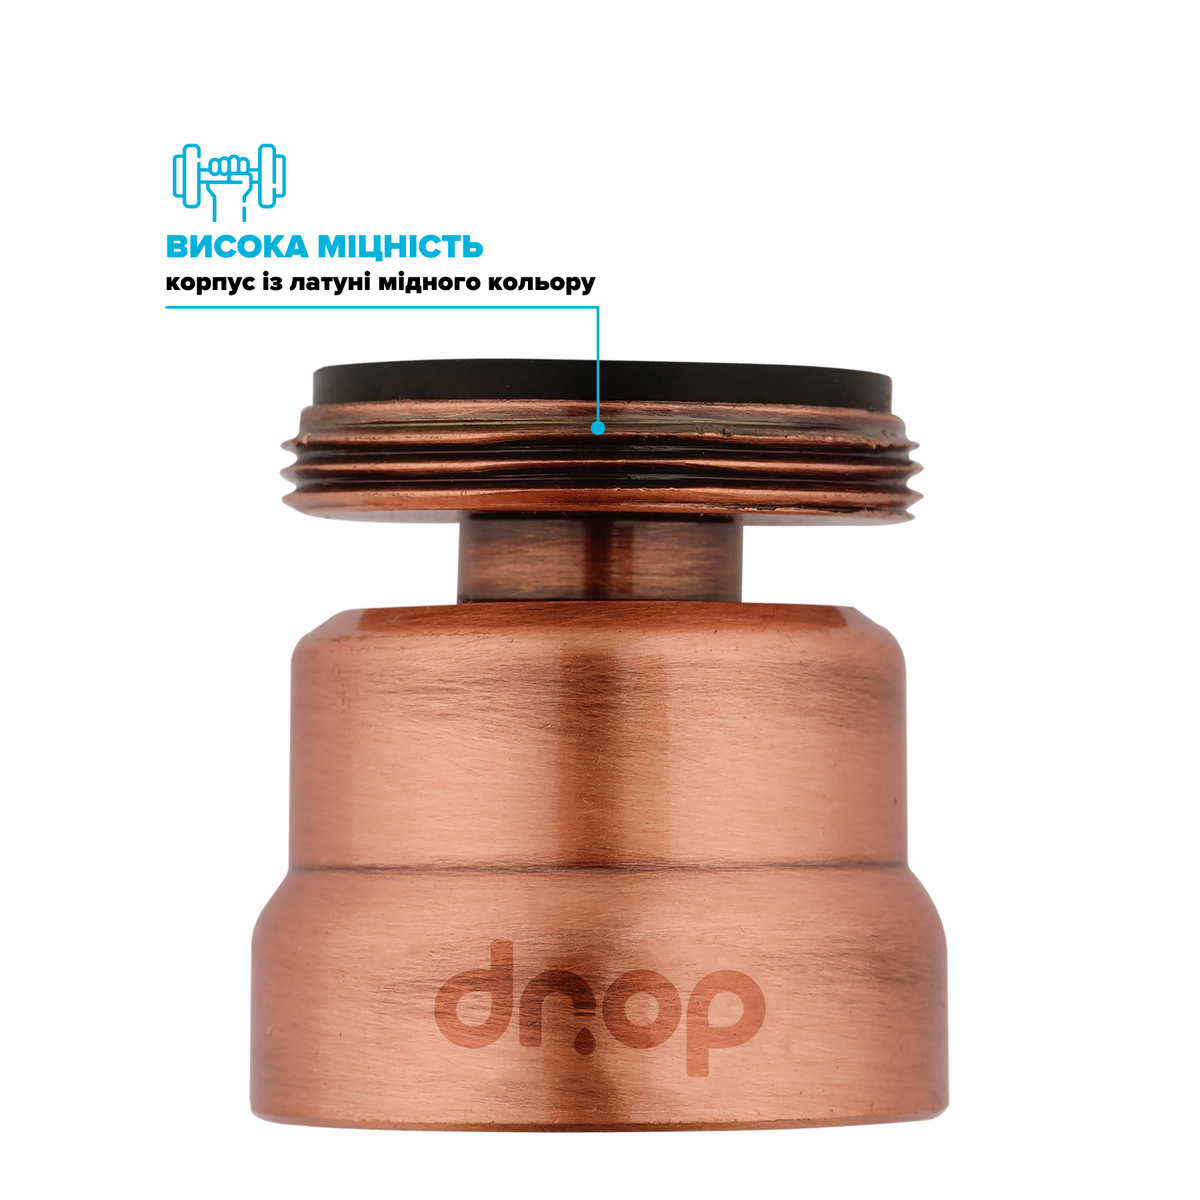 Поворотный адаптер 360° DROP CL360-CPR для смесителя - Угол наклона 15°, внешняя М 24 мм